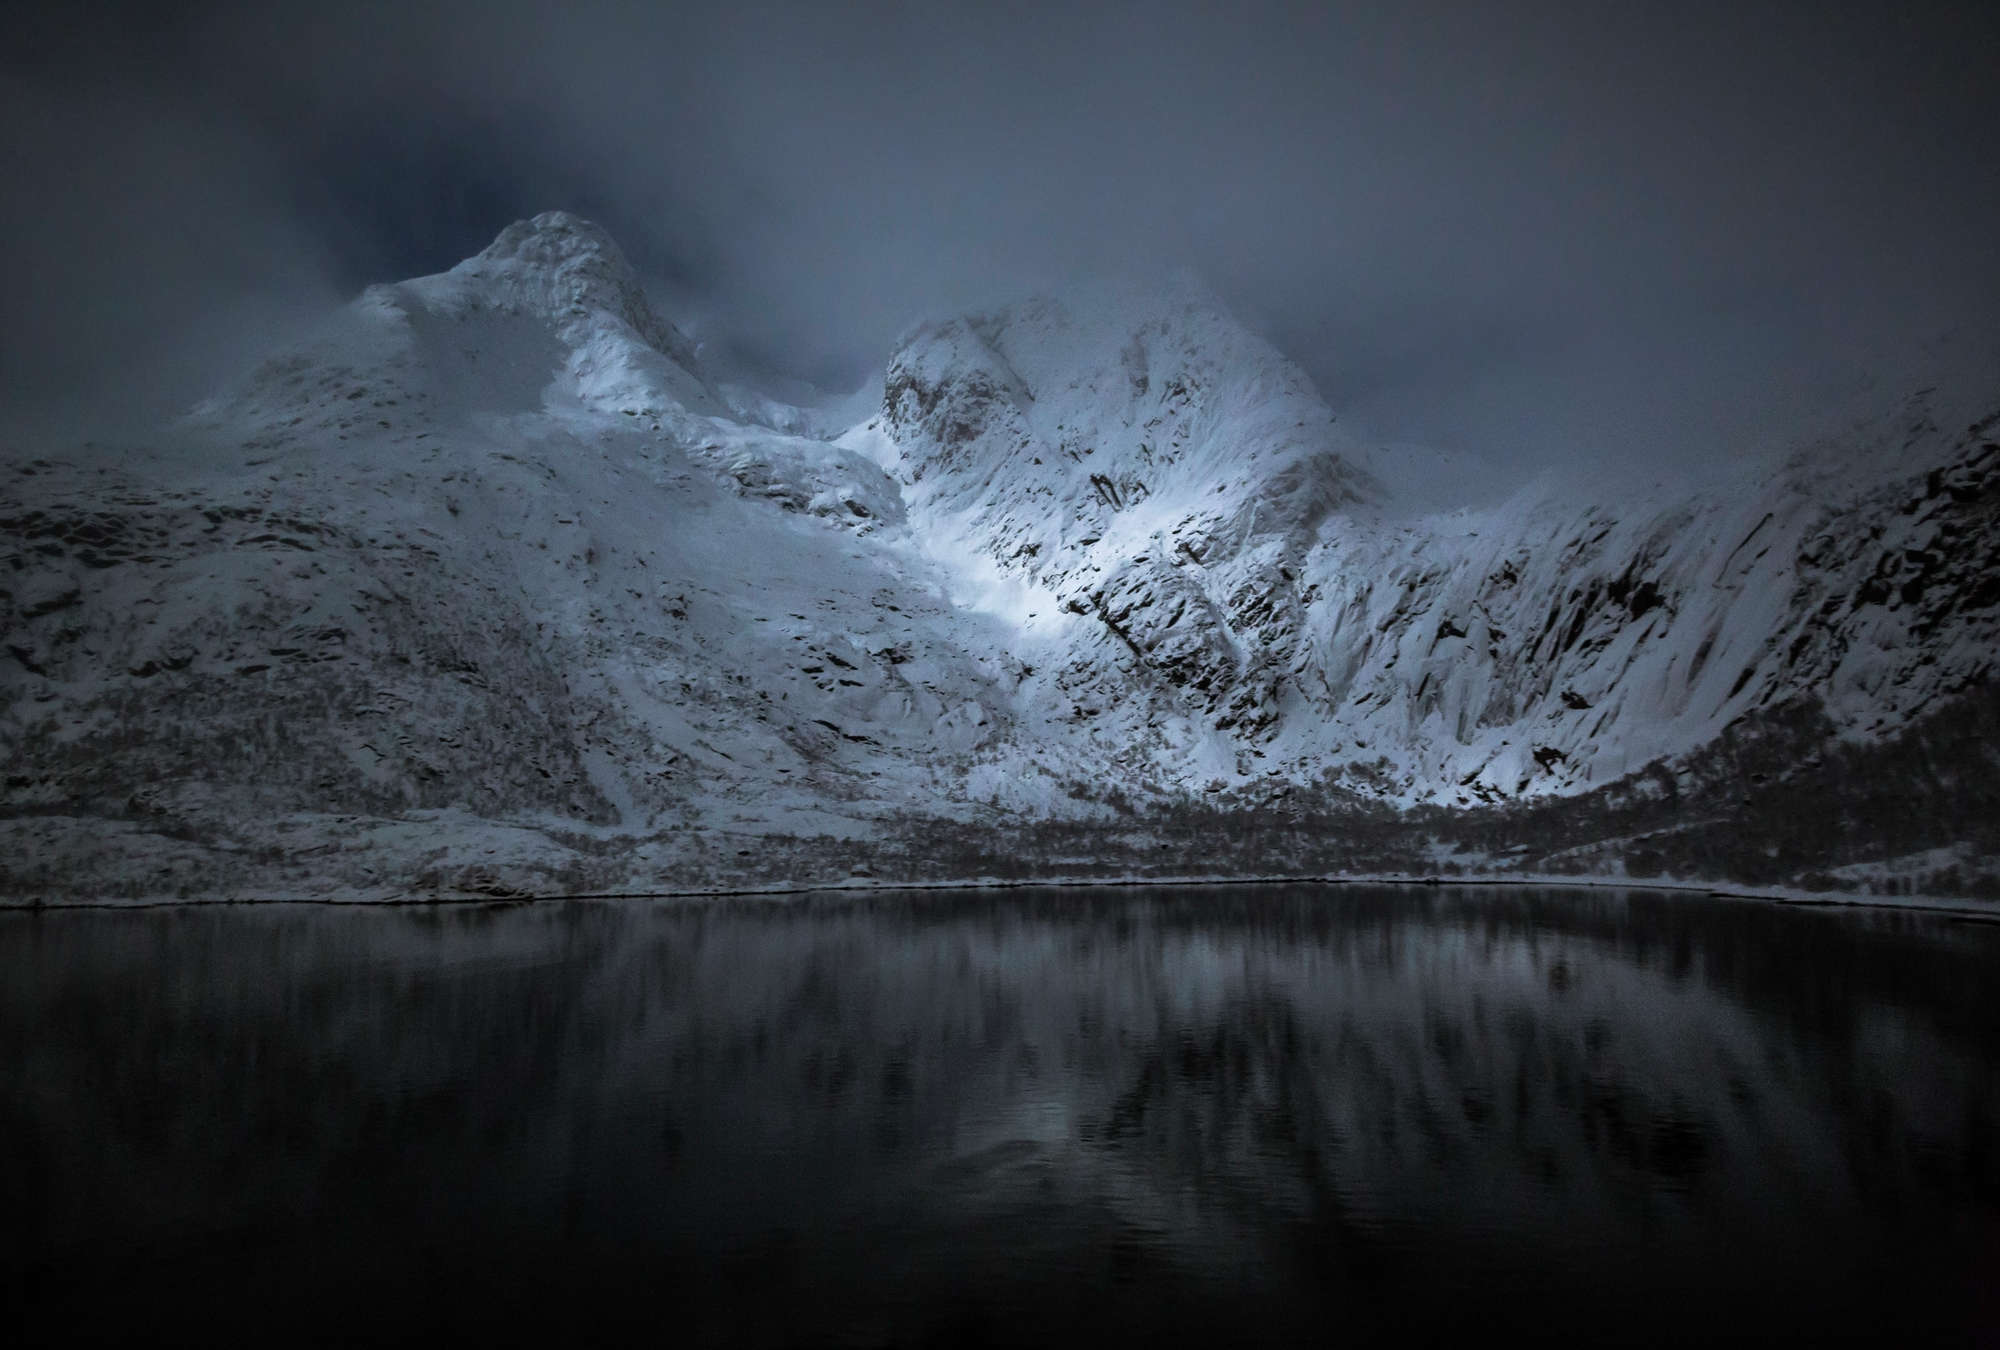             Fototapete Berge & See – Lofoten in Norwegen bei Nacht
        